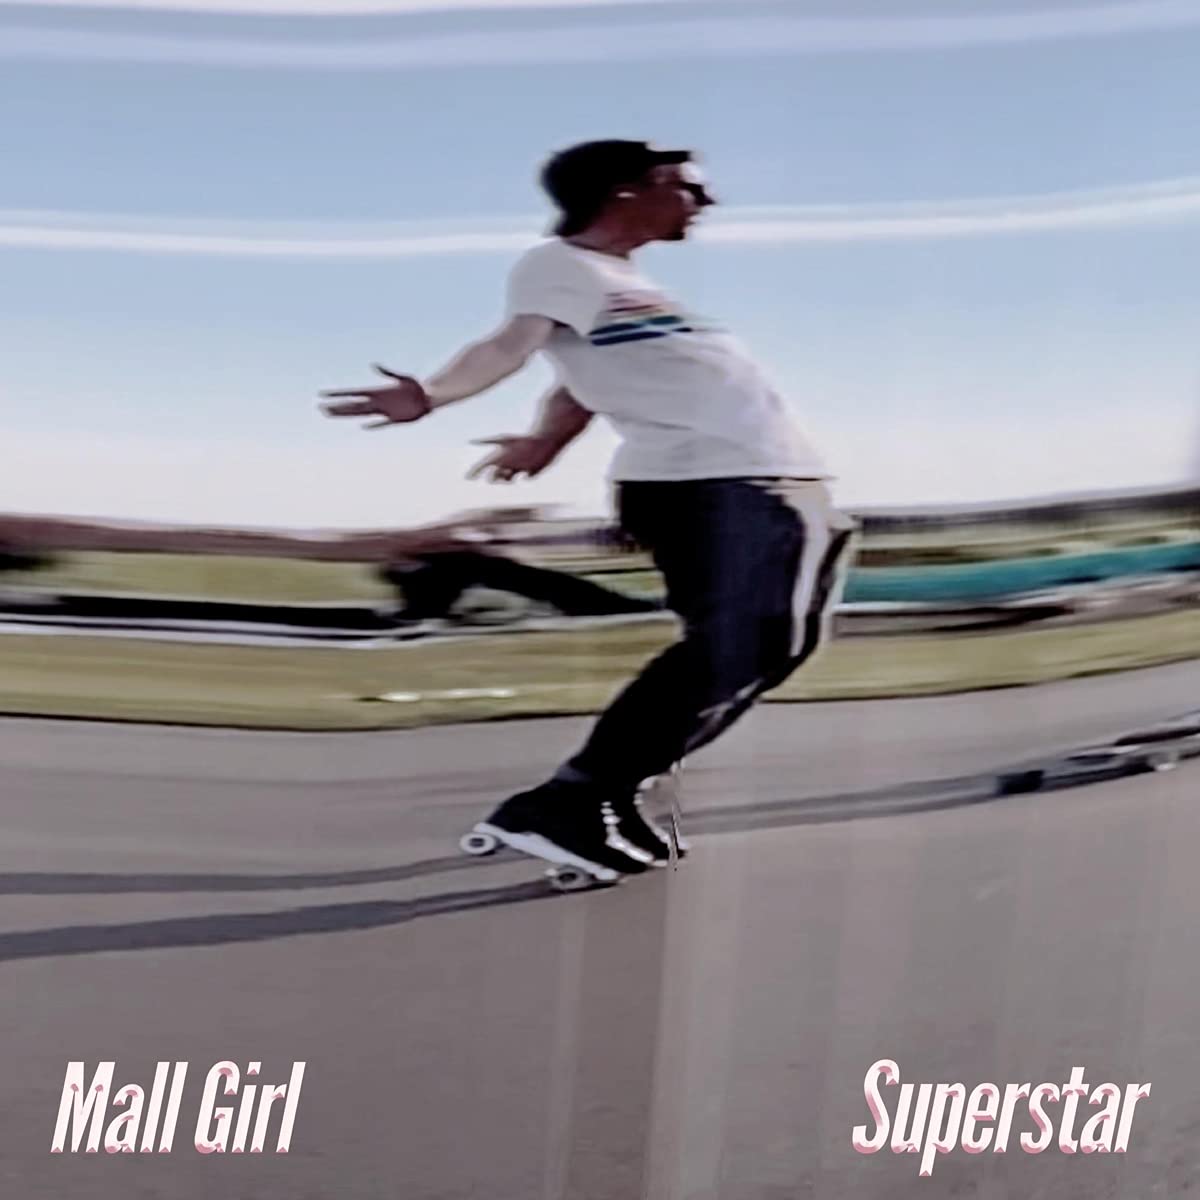 Vinile Mall Girl - Superstar NUOVO SIGILLATO, EDIZIONE DEL 29/04/2022 SUBITO DISPONIBILE